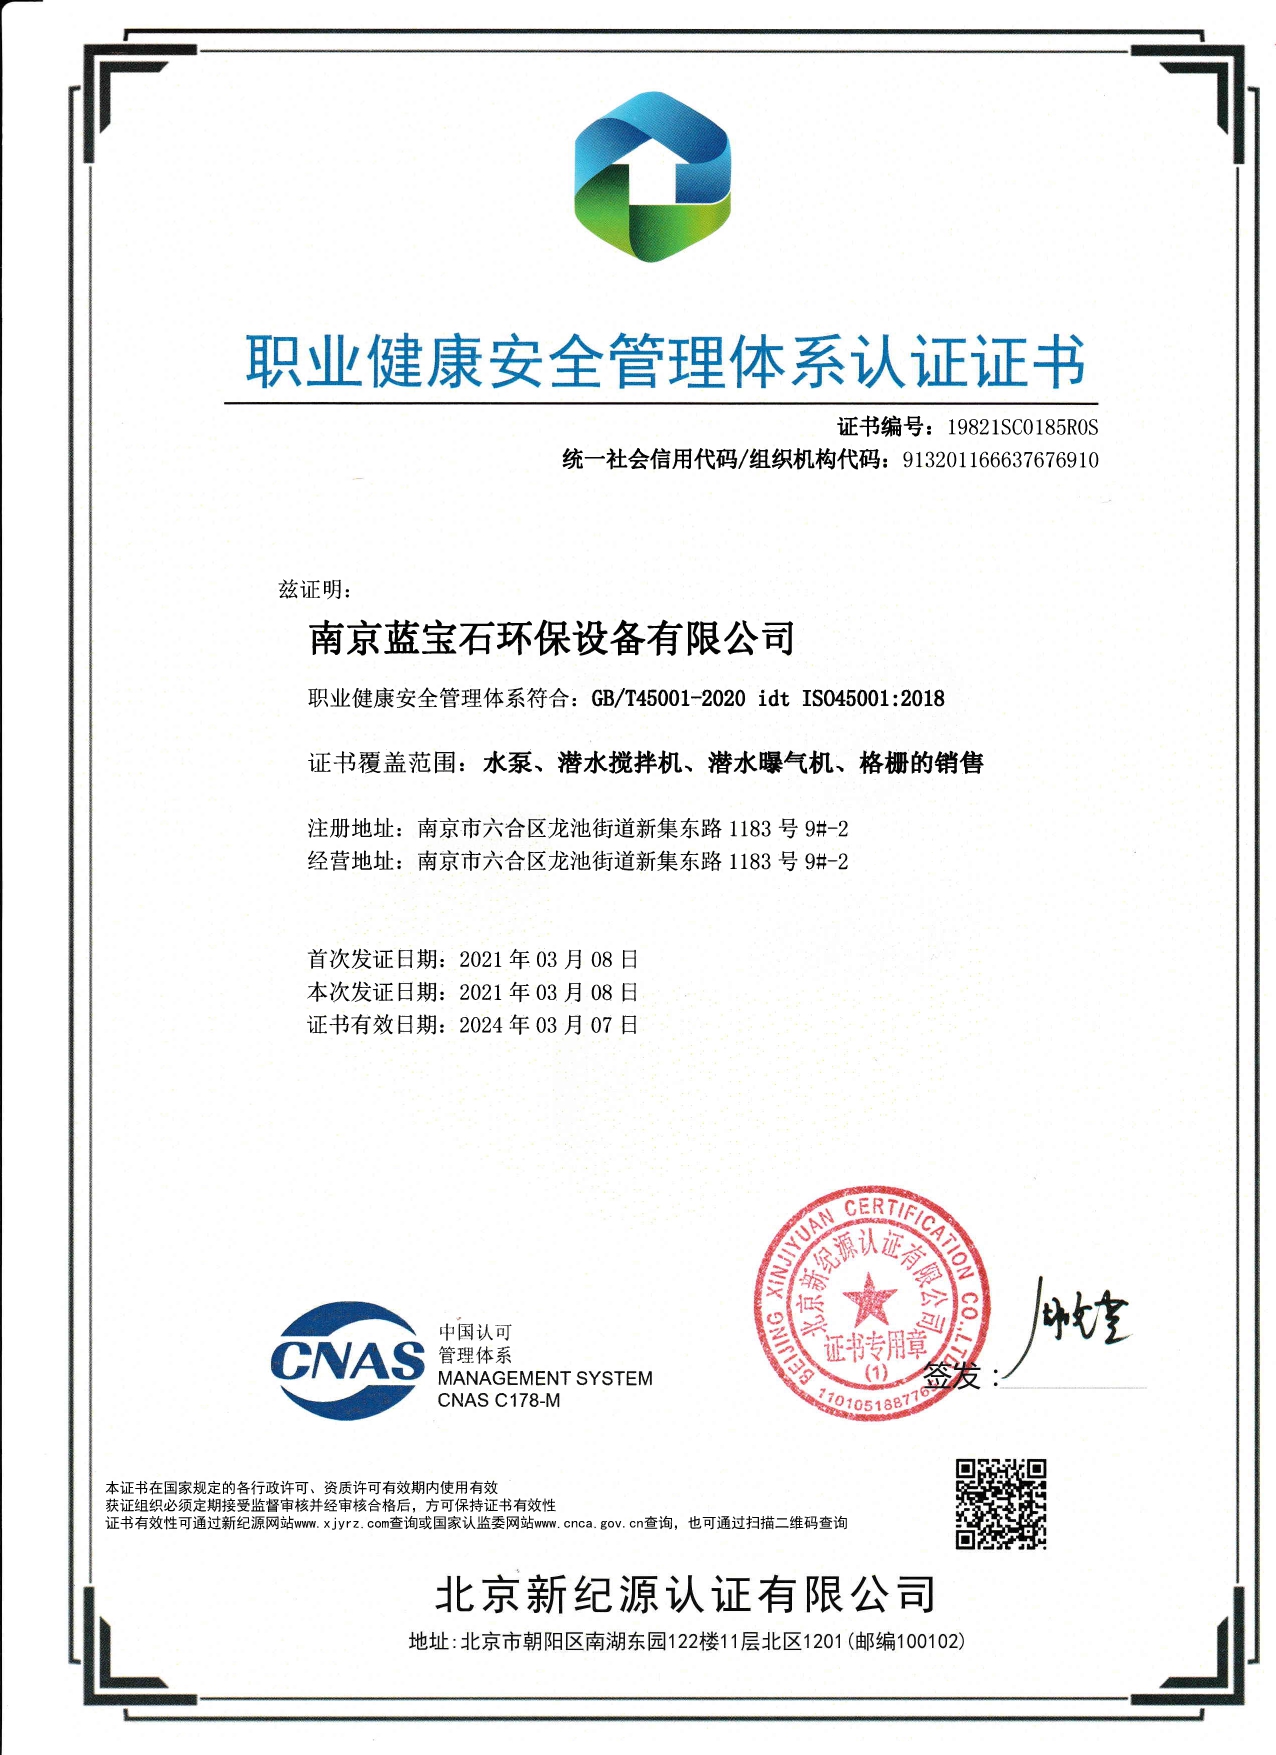 南京蓝宝石环保设备-beats官网有限公司通过职业健康安全管理体系认证